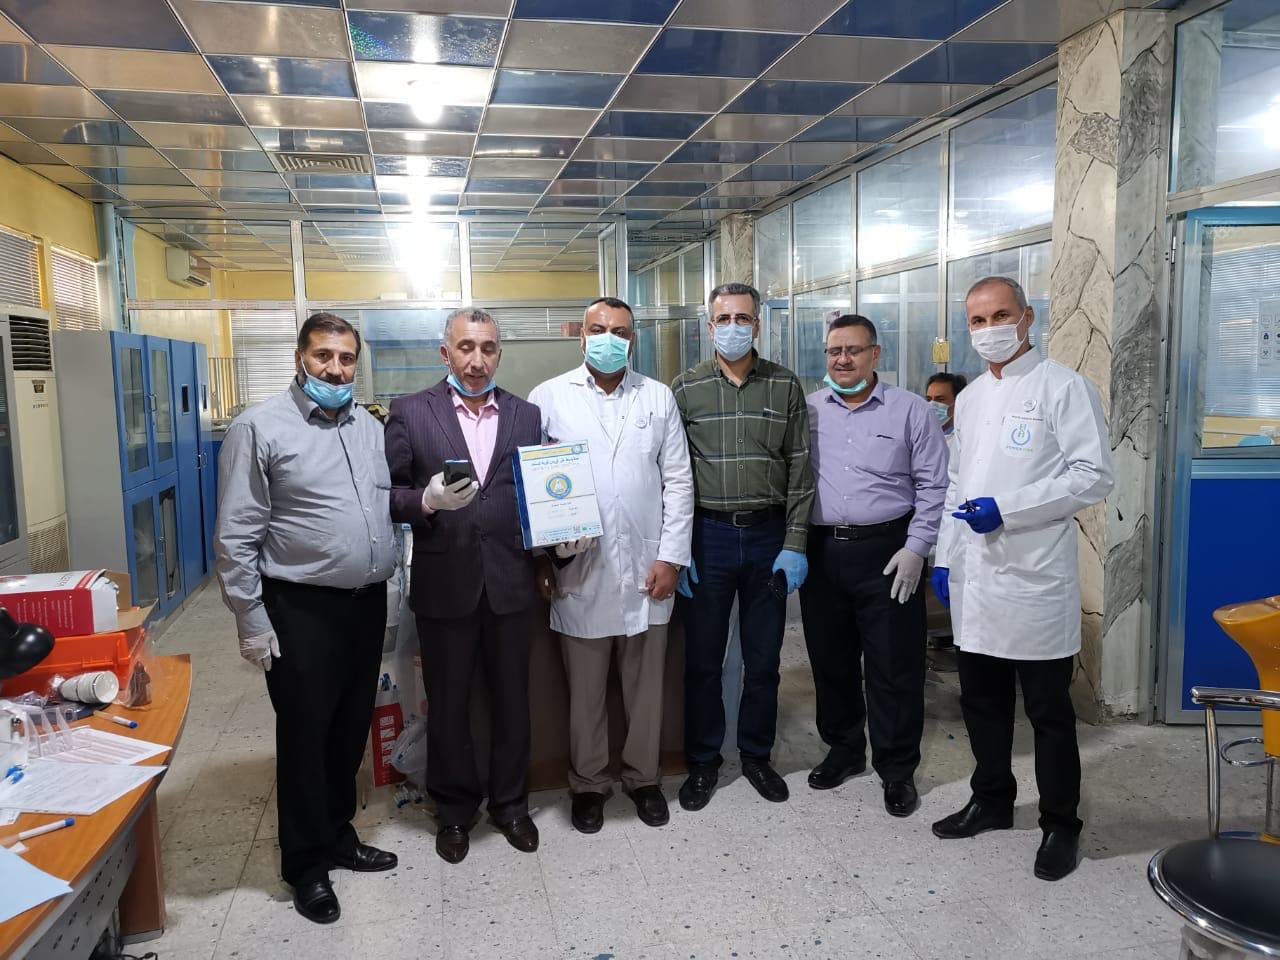 وفد من مديرية صحة كربلاء يزور كلية الصيدلة في جامعة البصرة لاستلام الاوساط النقلية المصنعة من المجموعة الطبية